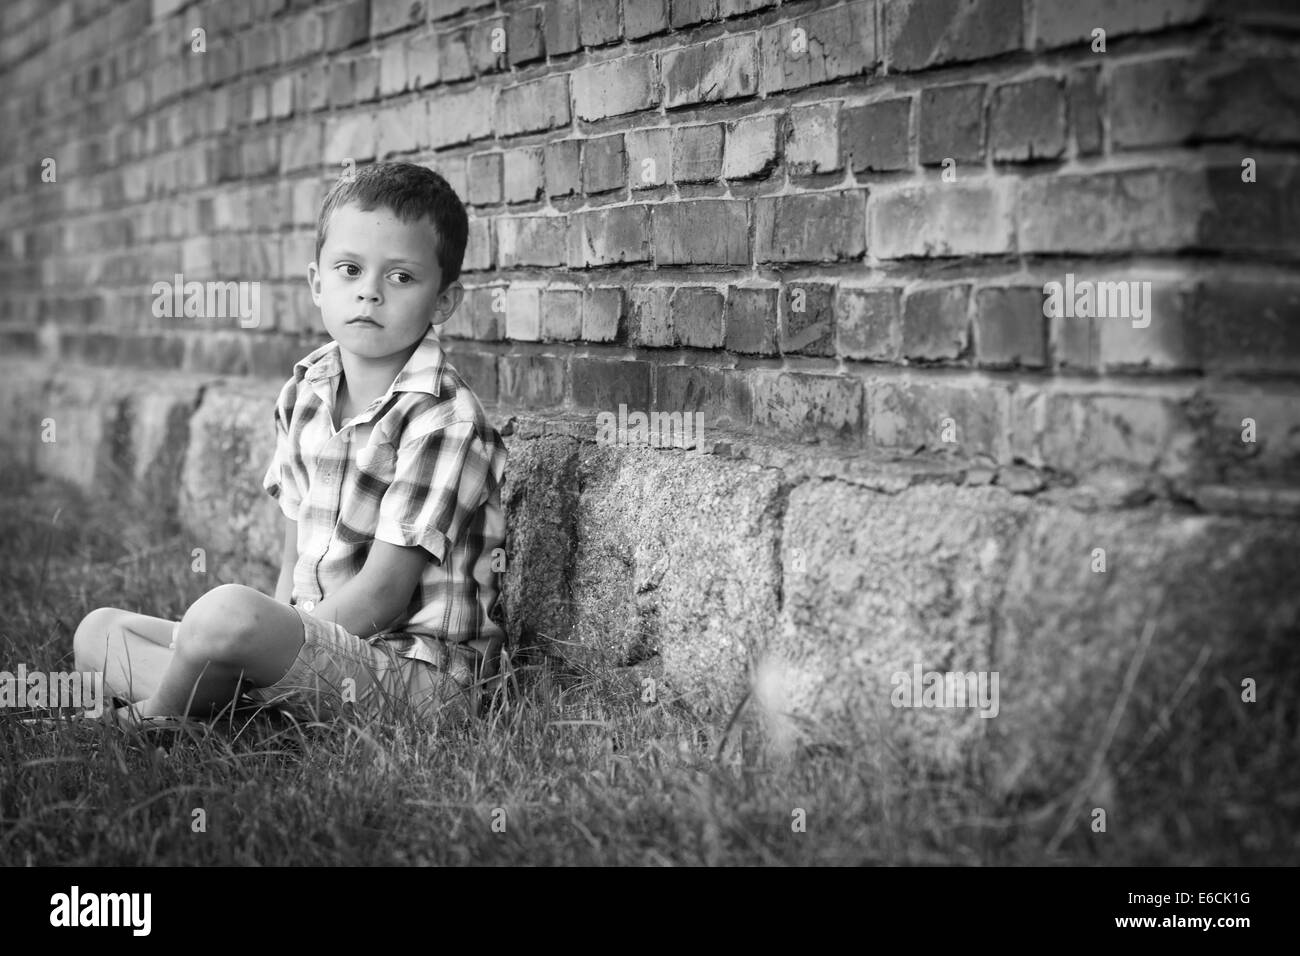 Immagine in bianco e nero del ragazzo seduto in erba a parete Foto Stock